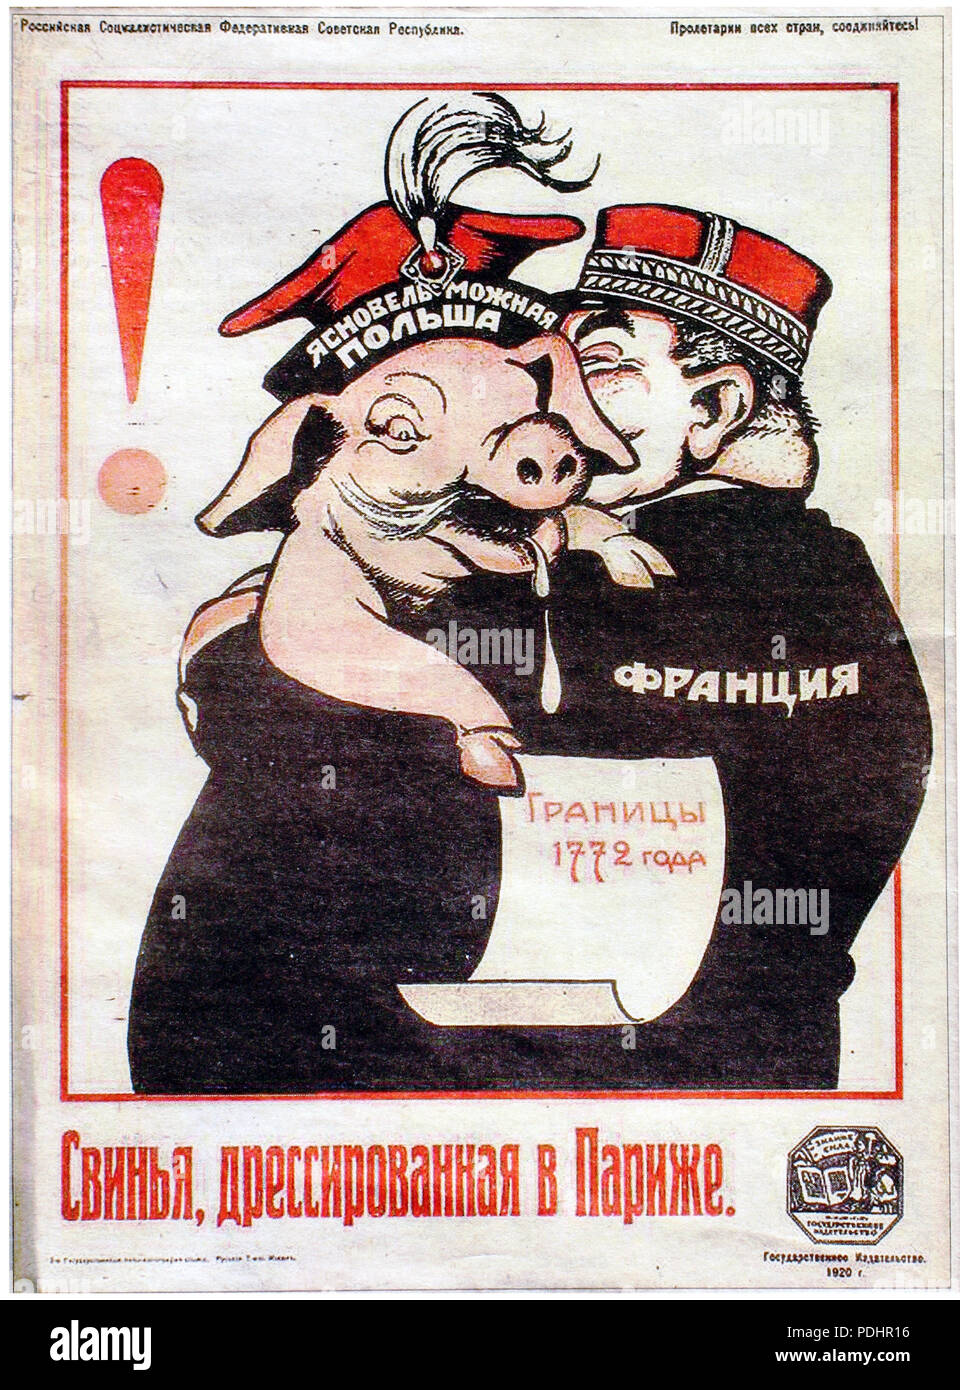 267 porcs polonais formé à Paris, affiche de propagande russe 1920 Banque D'Images